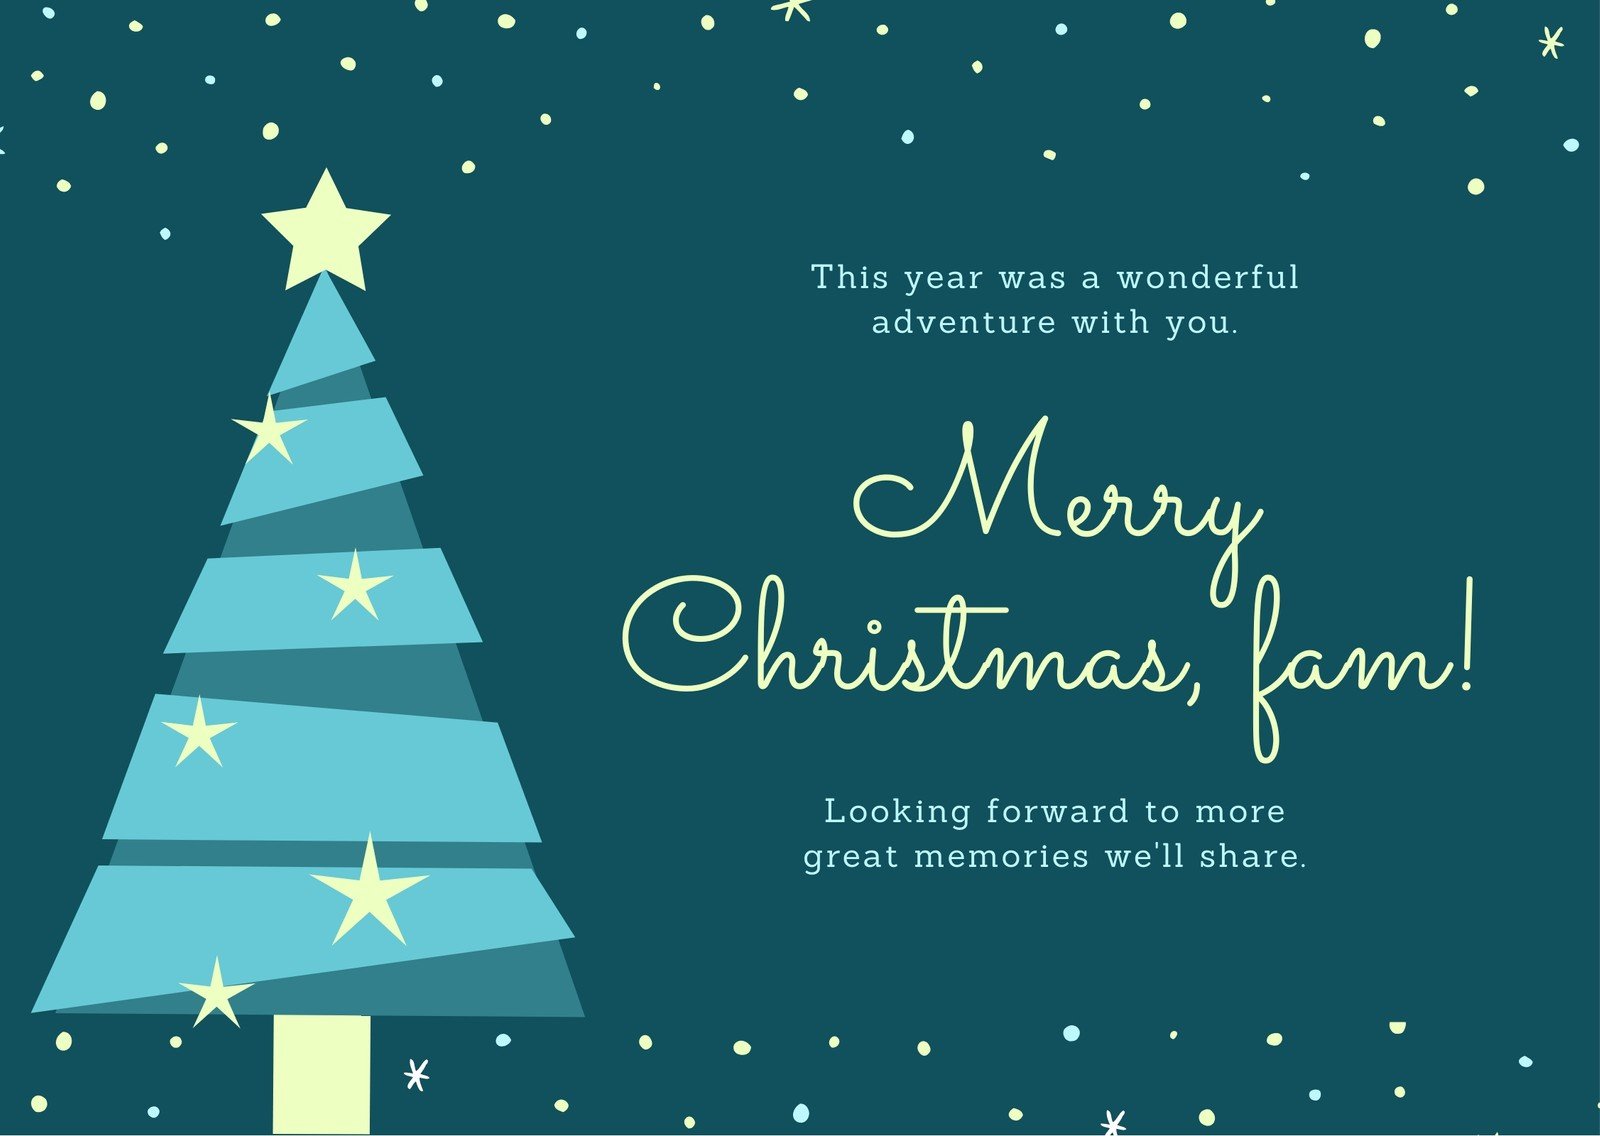 Free custom printable Christmas card templates  Canva For Christmas Photo Cards Templates Free Downloads